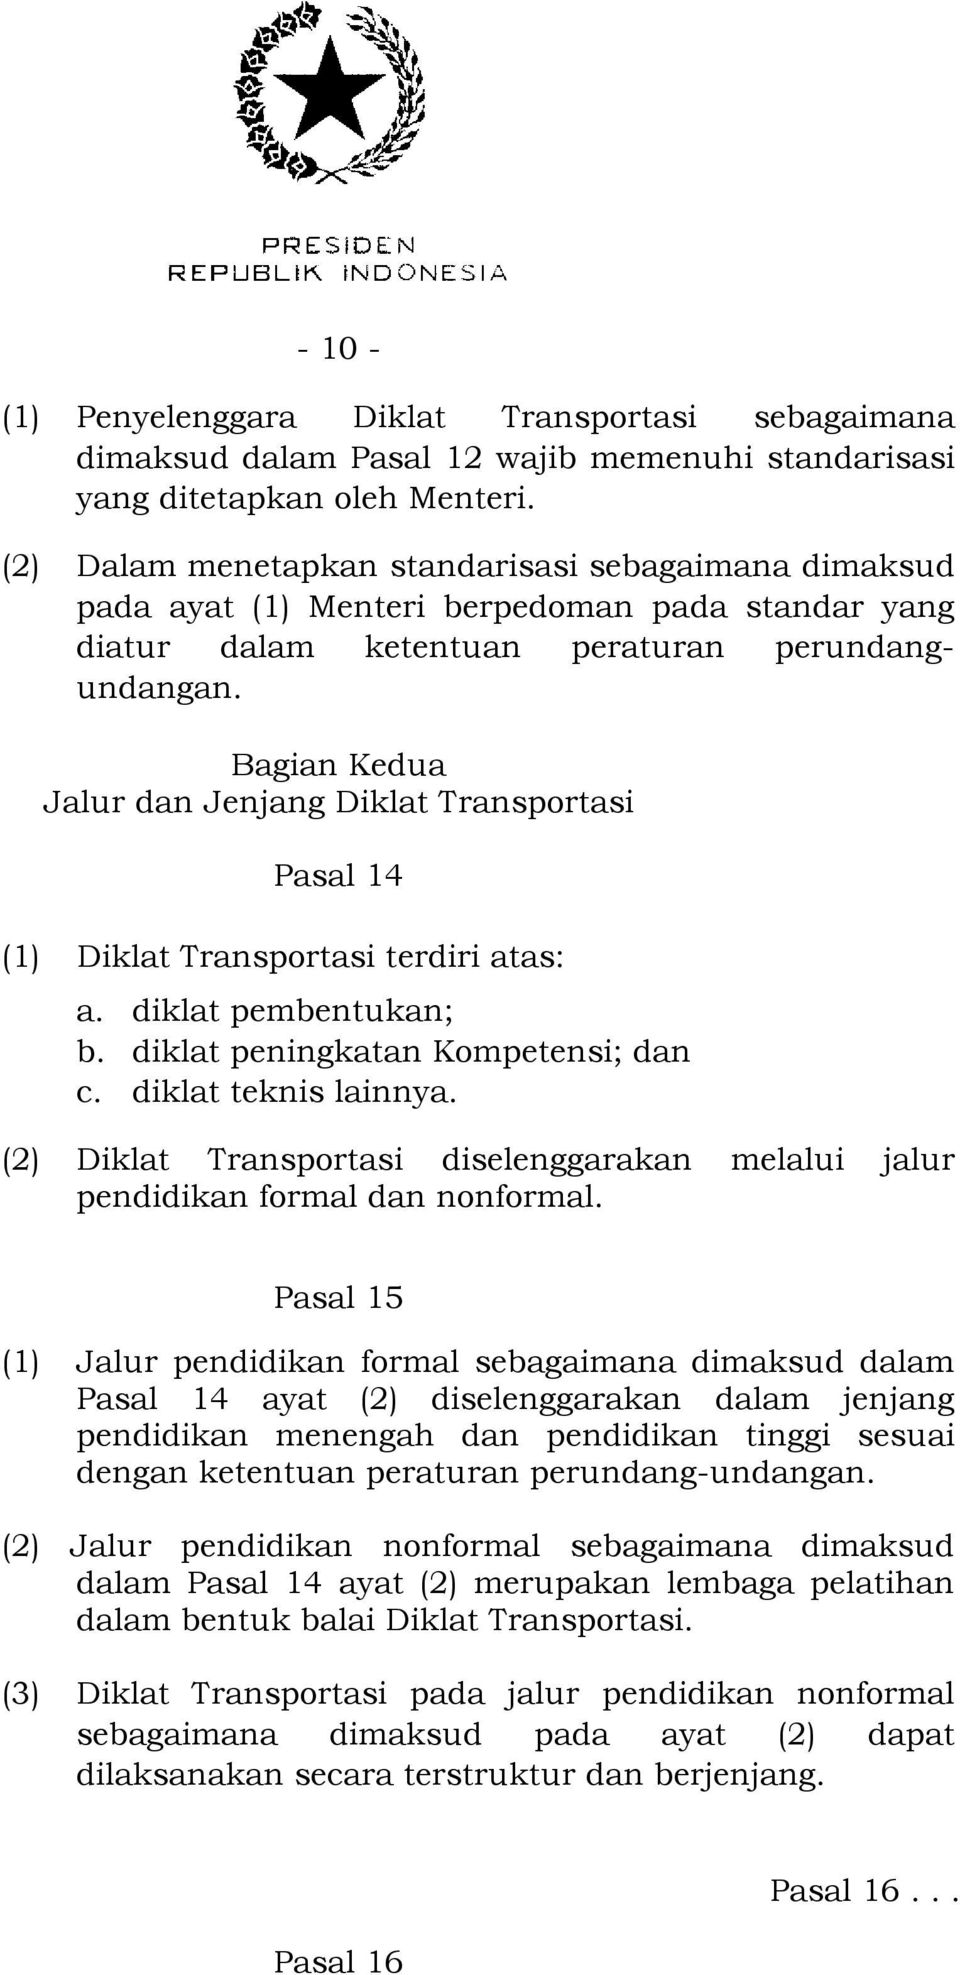 Bagian Kedua Jalur dan Jenjang Diklat Transportasi Pasal 14 (1) Diklat Transportasi terdiri atas: a. diklat pembentukan; b. diklat peningkatan Kompetensi; dan c. diklat teknis lainnya.